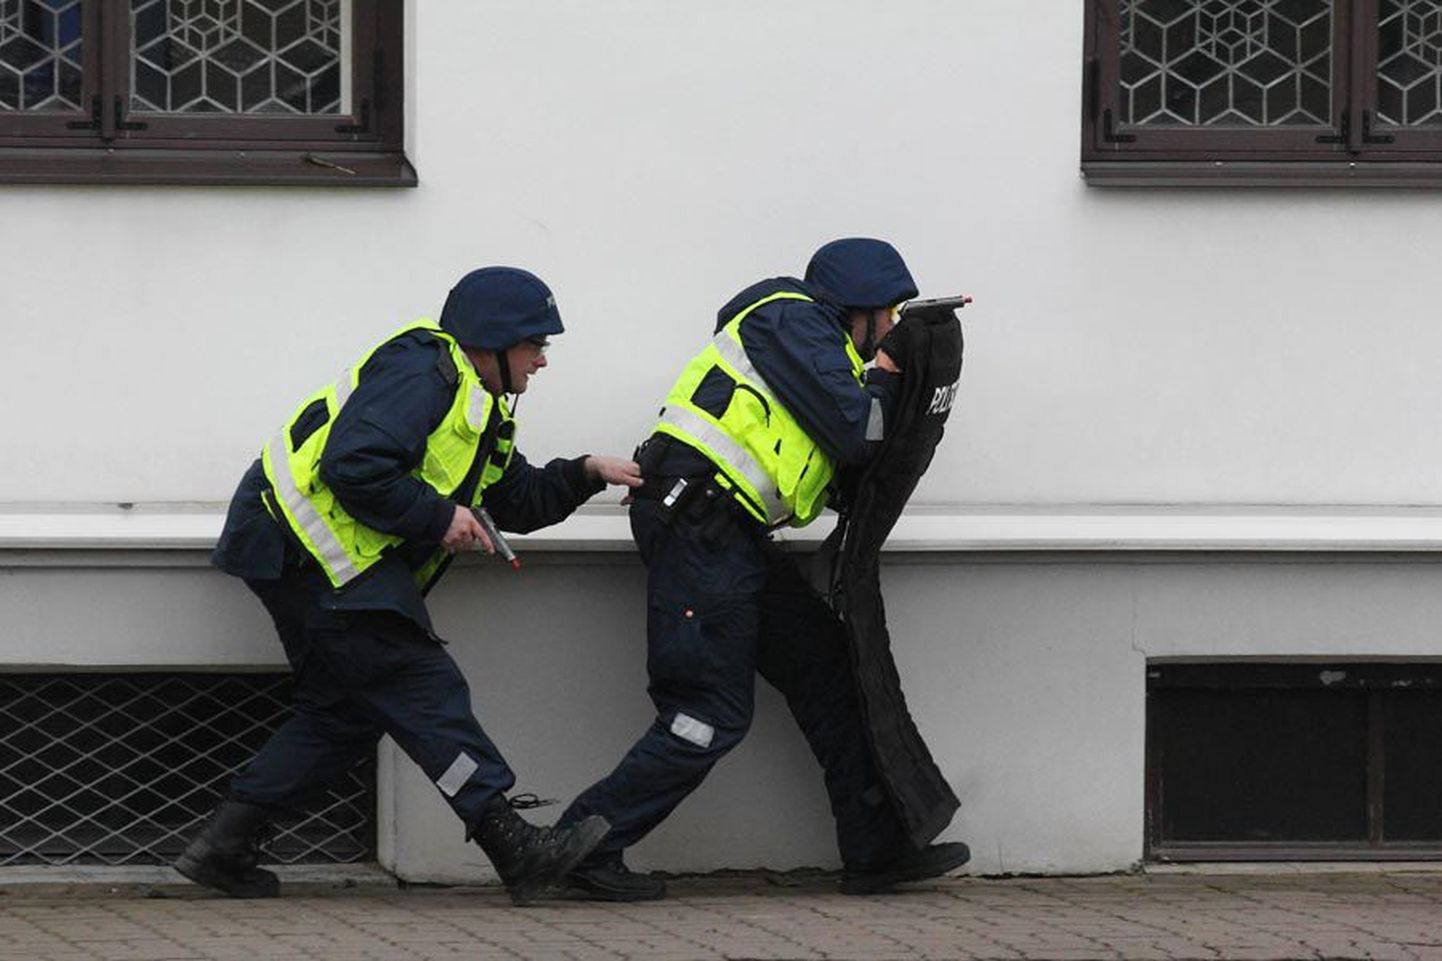 Terrorirünnaku korral tegutsemist on Viljandis harjutatud varemgi. Mullu novembris mängiti läbi pantvangikriis Viljandi raekojas.